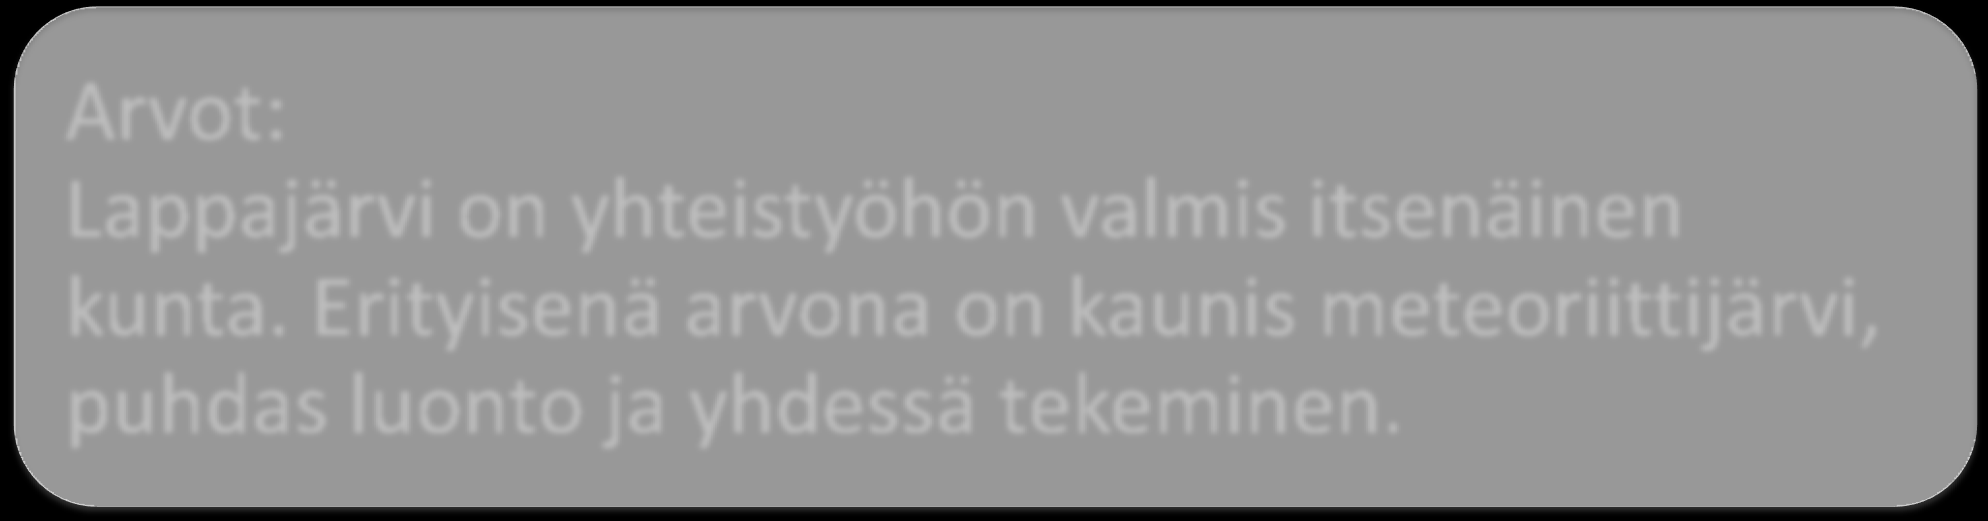 Arvot: Lappajärvi on yhteistyöhön valmis itsenäinen kunta.